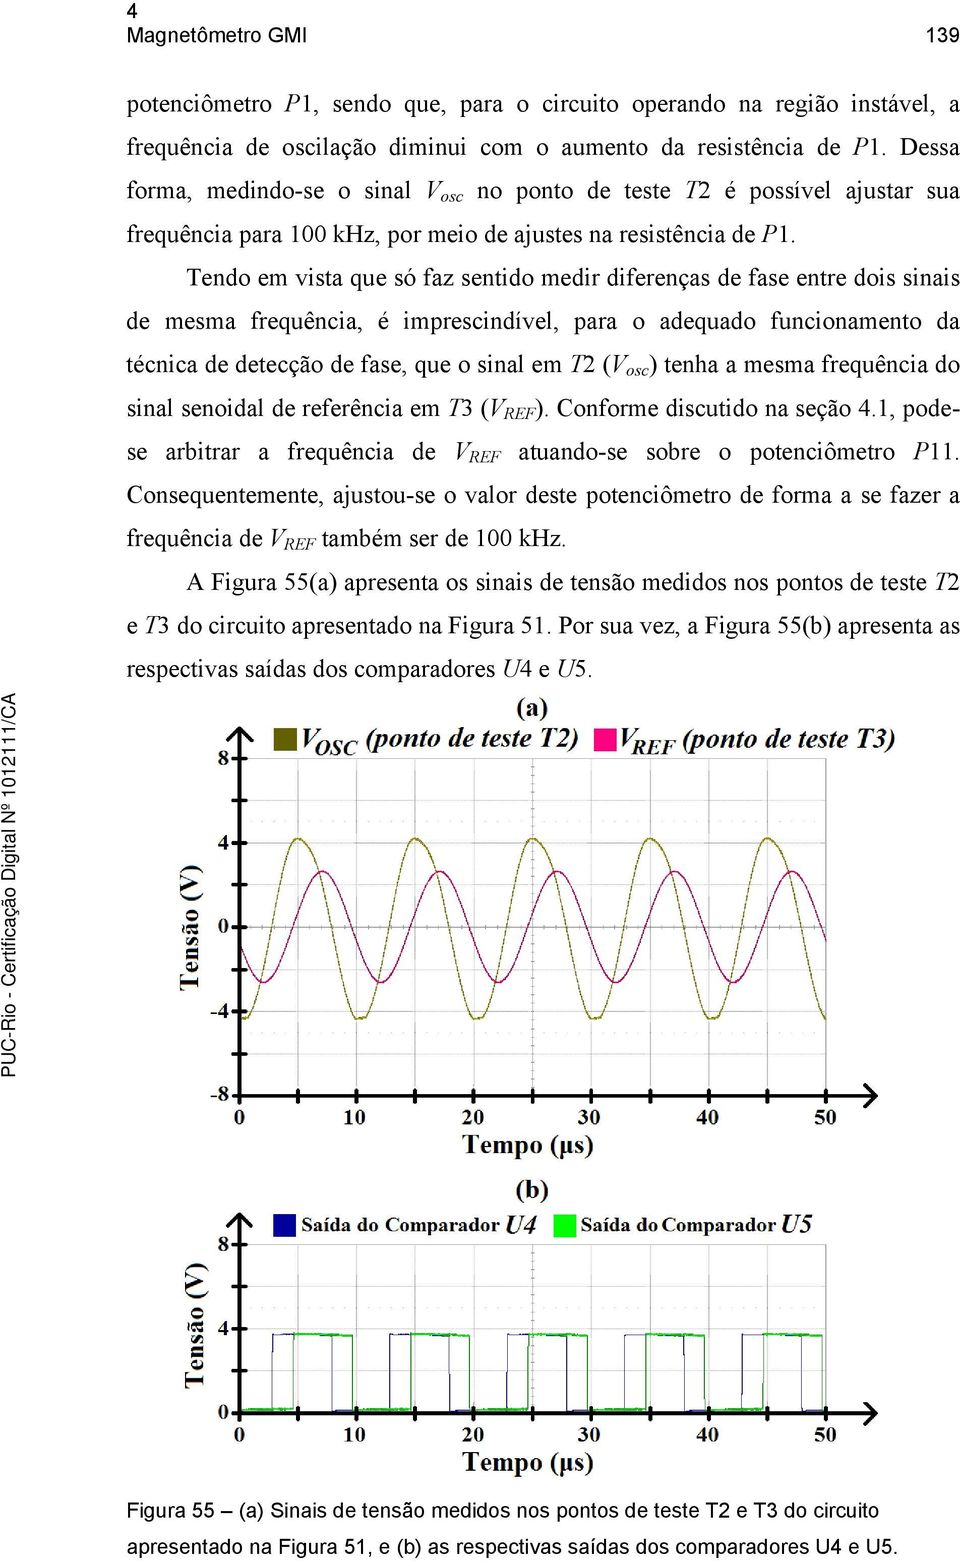 Tendo em vista que só faz sentido medir diferenças de fase entre dois sinais de mesma frequência, é imprescindível, para o adequado funcionamento da técnica de detecção de fase, que o sinal em T2 (V